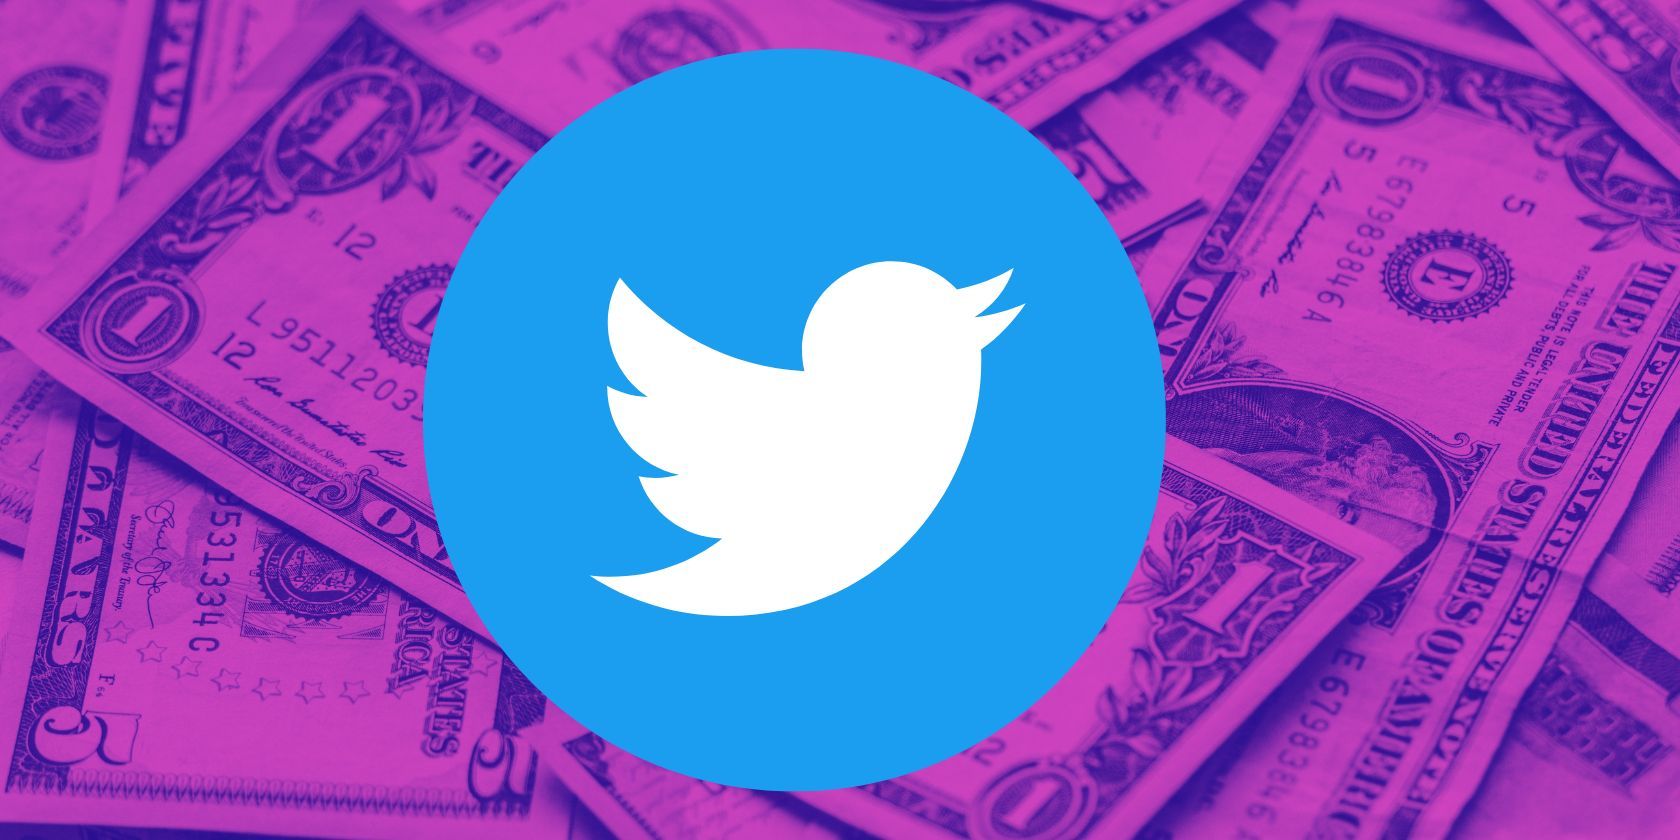 twitter logo with dollar bills in background